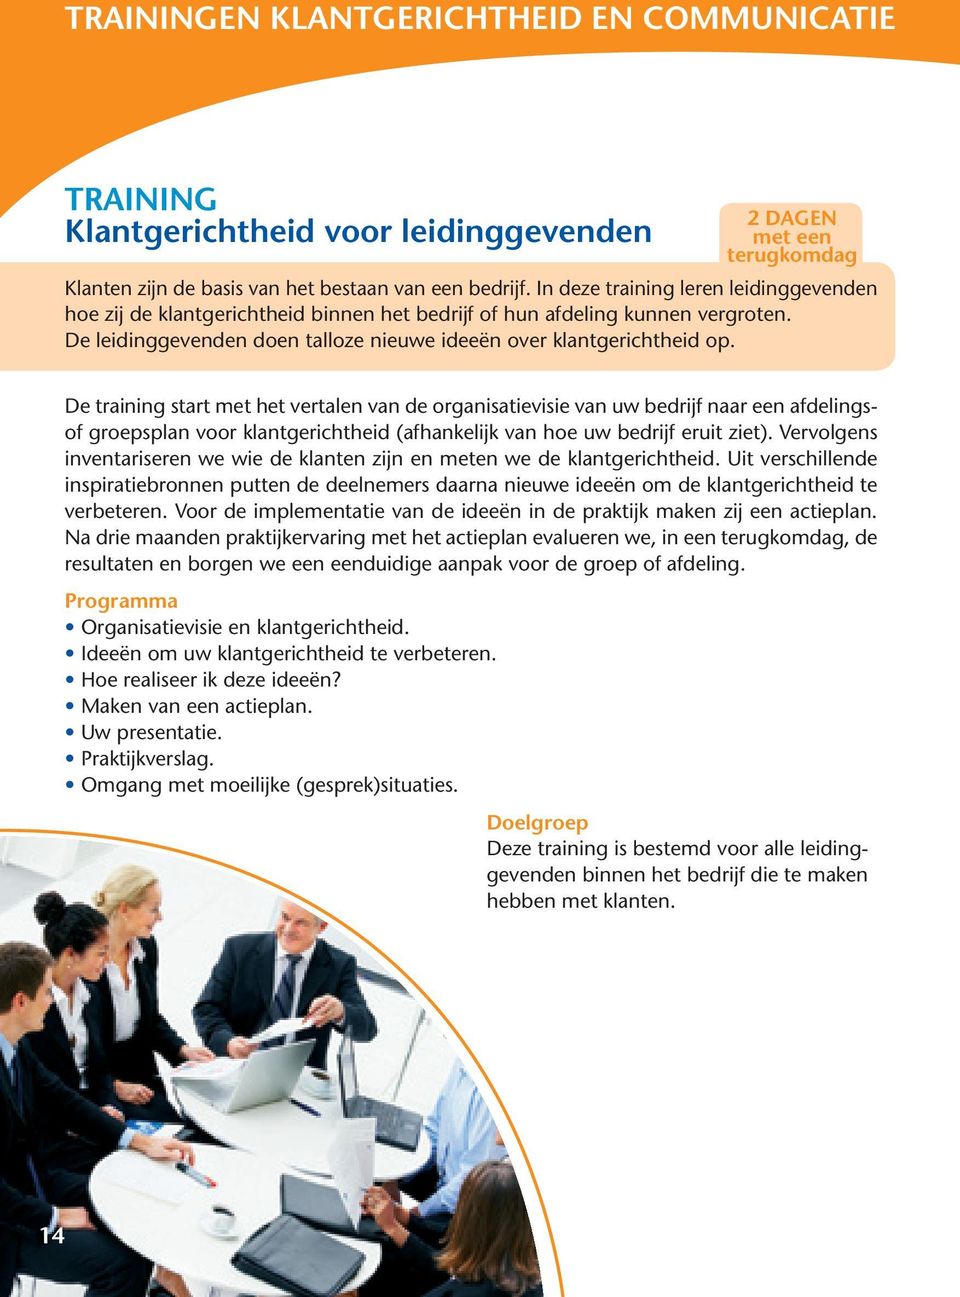 De training start met het vertalen van de organisatievisie van uw bedrijf naar een afdelingsof groepsplan voor klantgerichtheid (afhankelijk van hoe uw bedrijf eruit ziet).